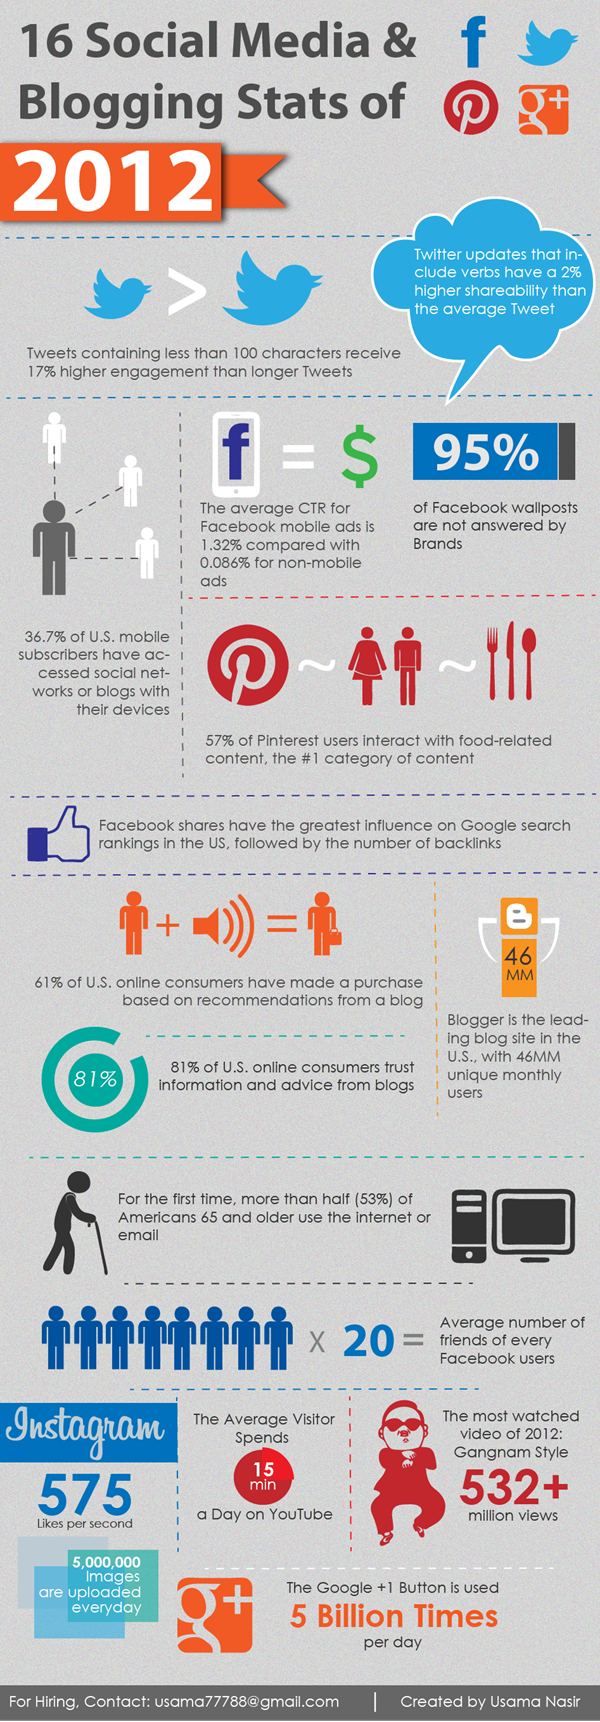 16-social-media--blogging-stats-of-2012